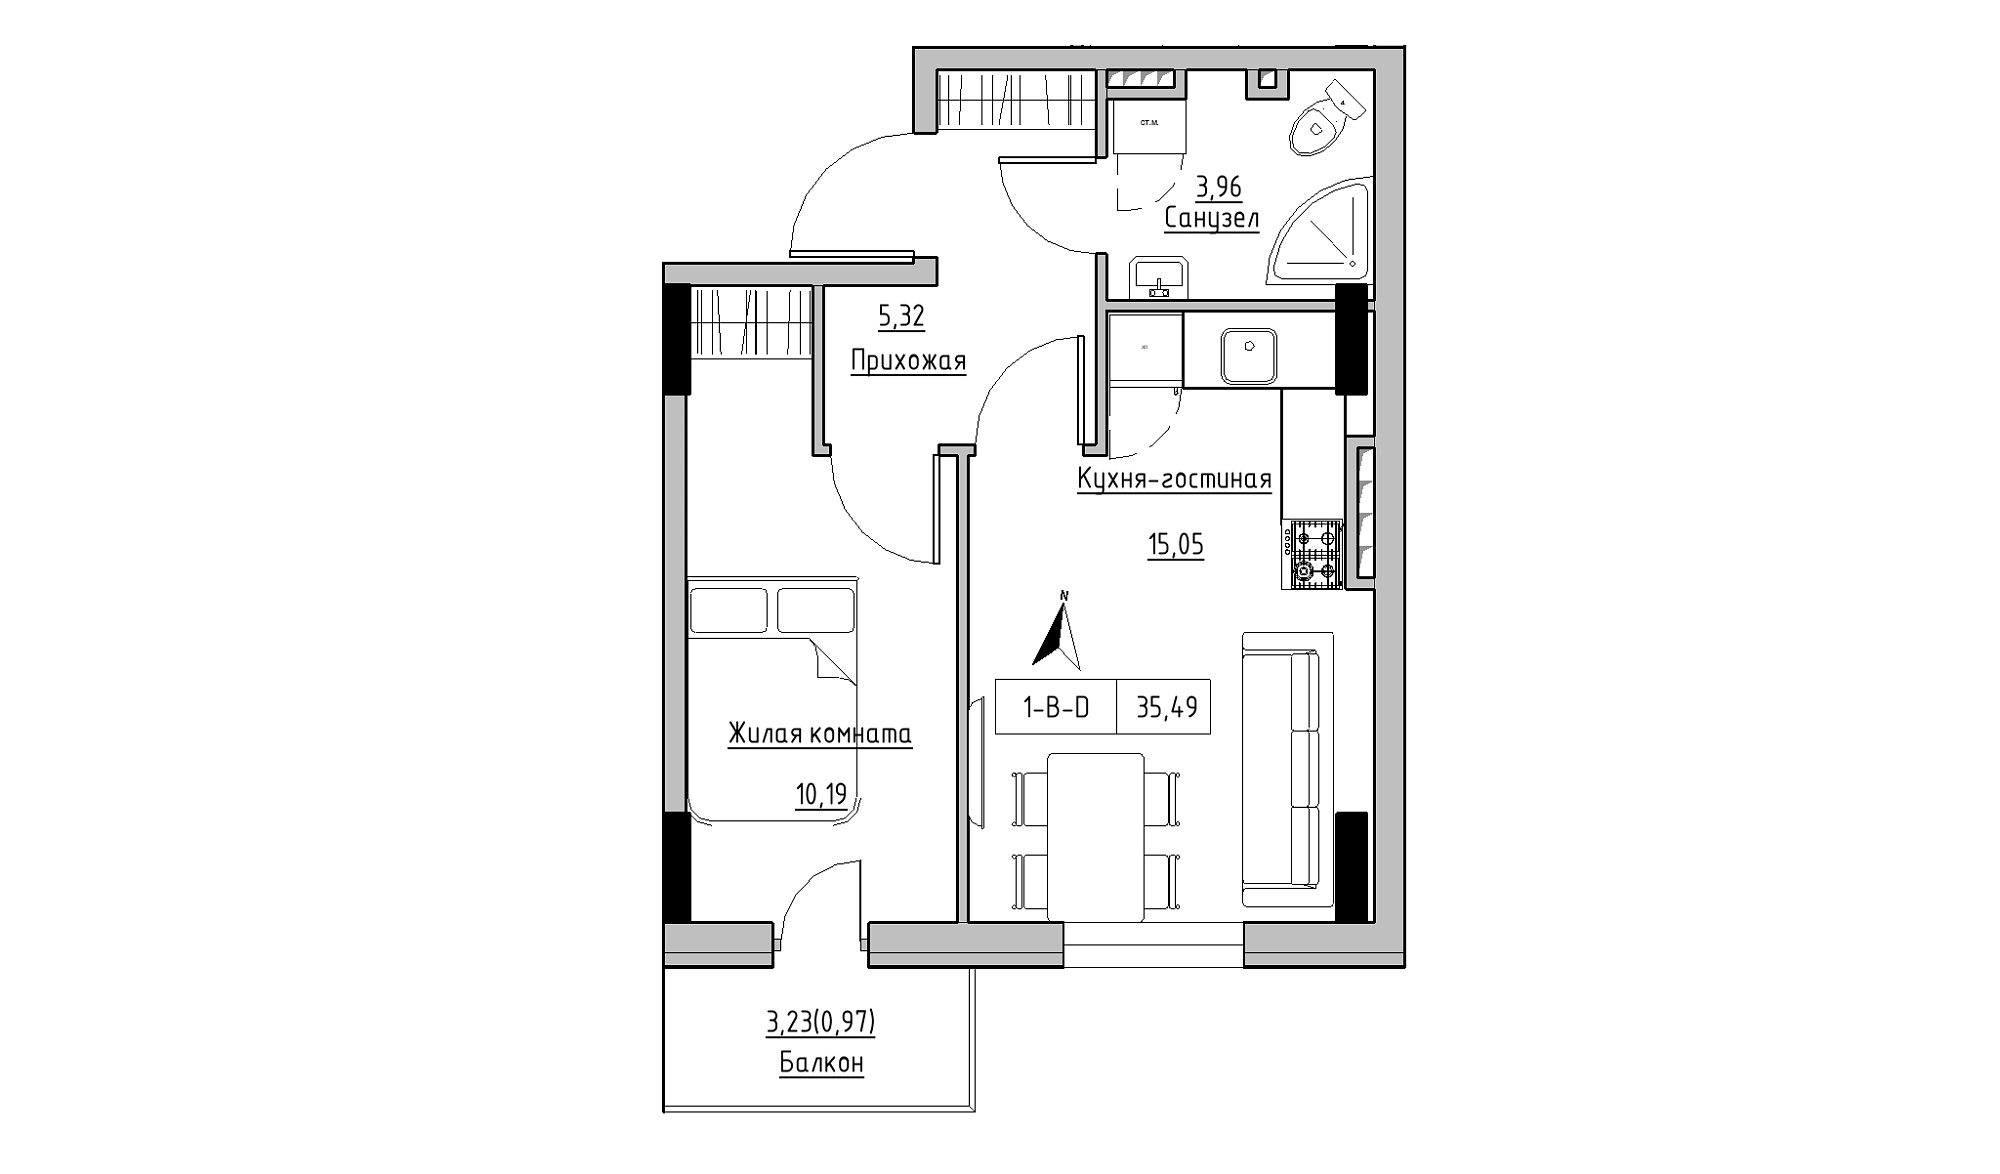 Планування 1-к квартира площею 35.49м2, KS-025-04/0011.